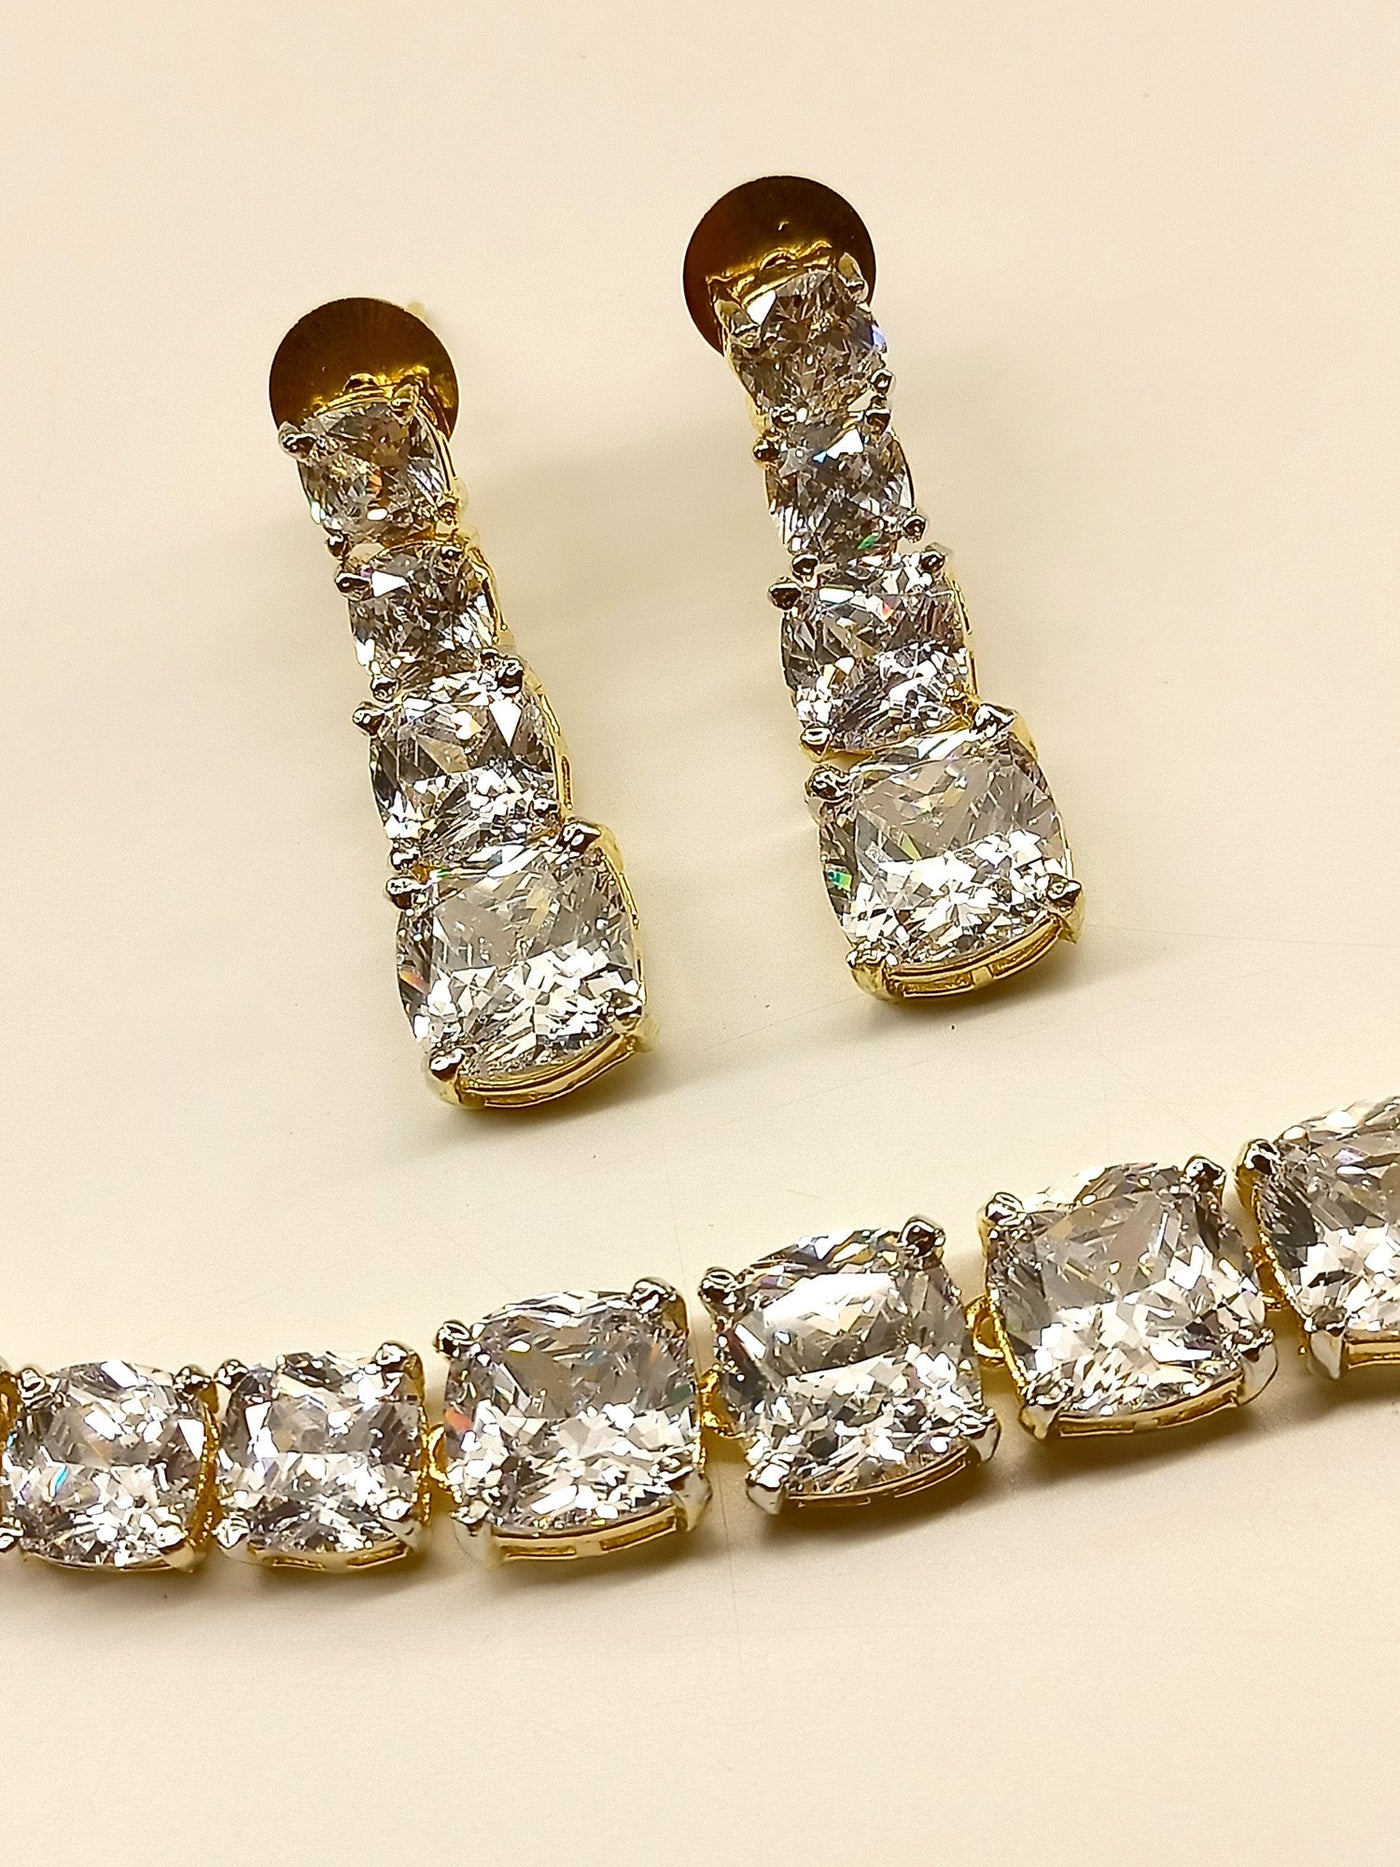 Preeti White American Diamond Necklace Set